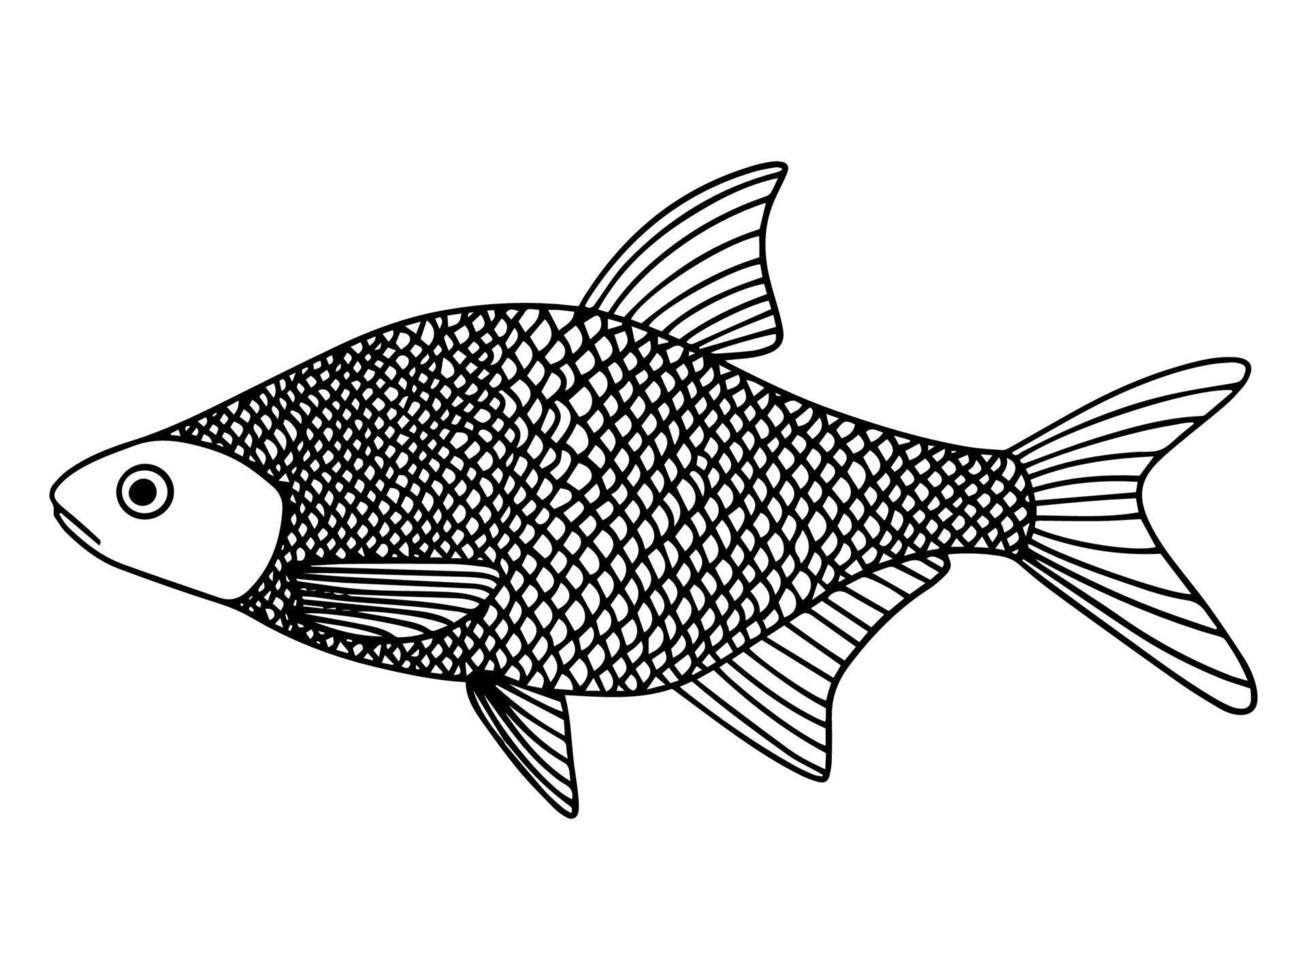 elemento de línea dibujado a mano. estilo de garabato de pescado, gran diseño para cualquier propósito. vector